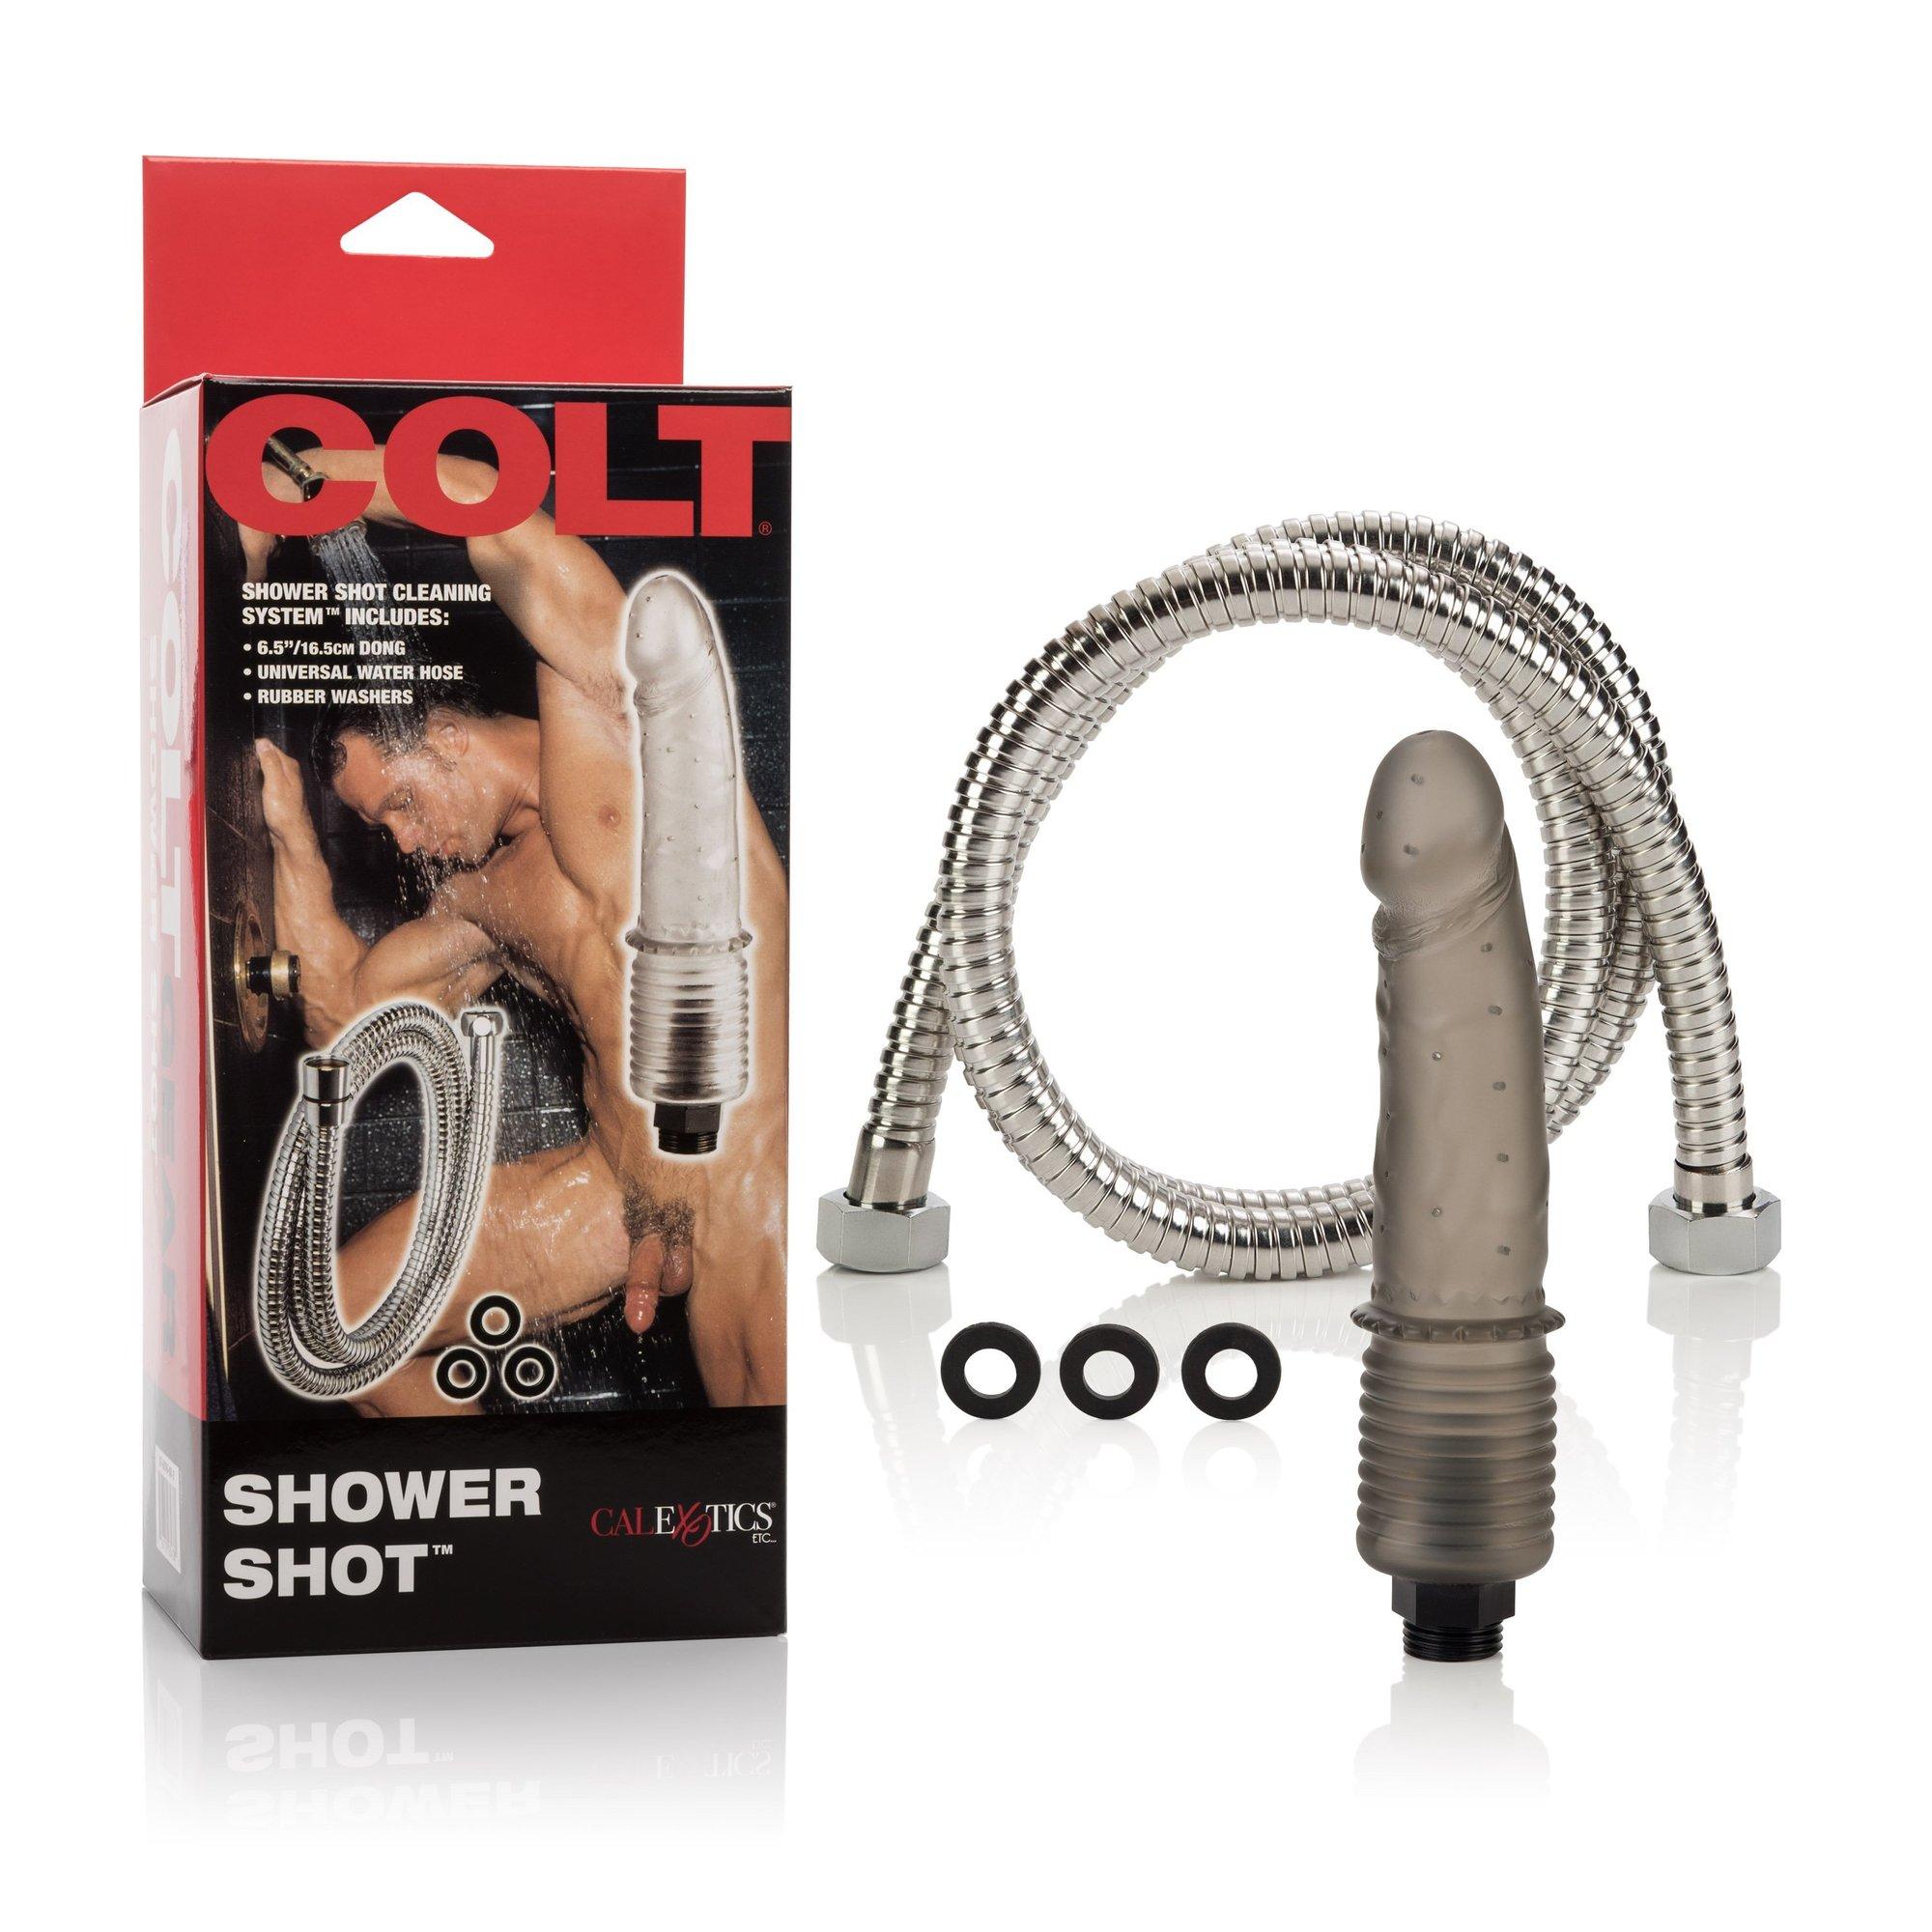 Cirrus reccomend Colt shower shot dildo